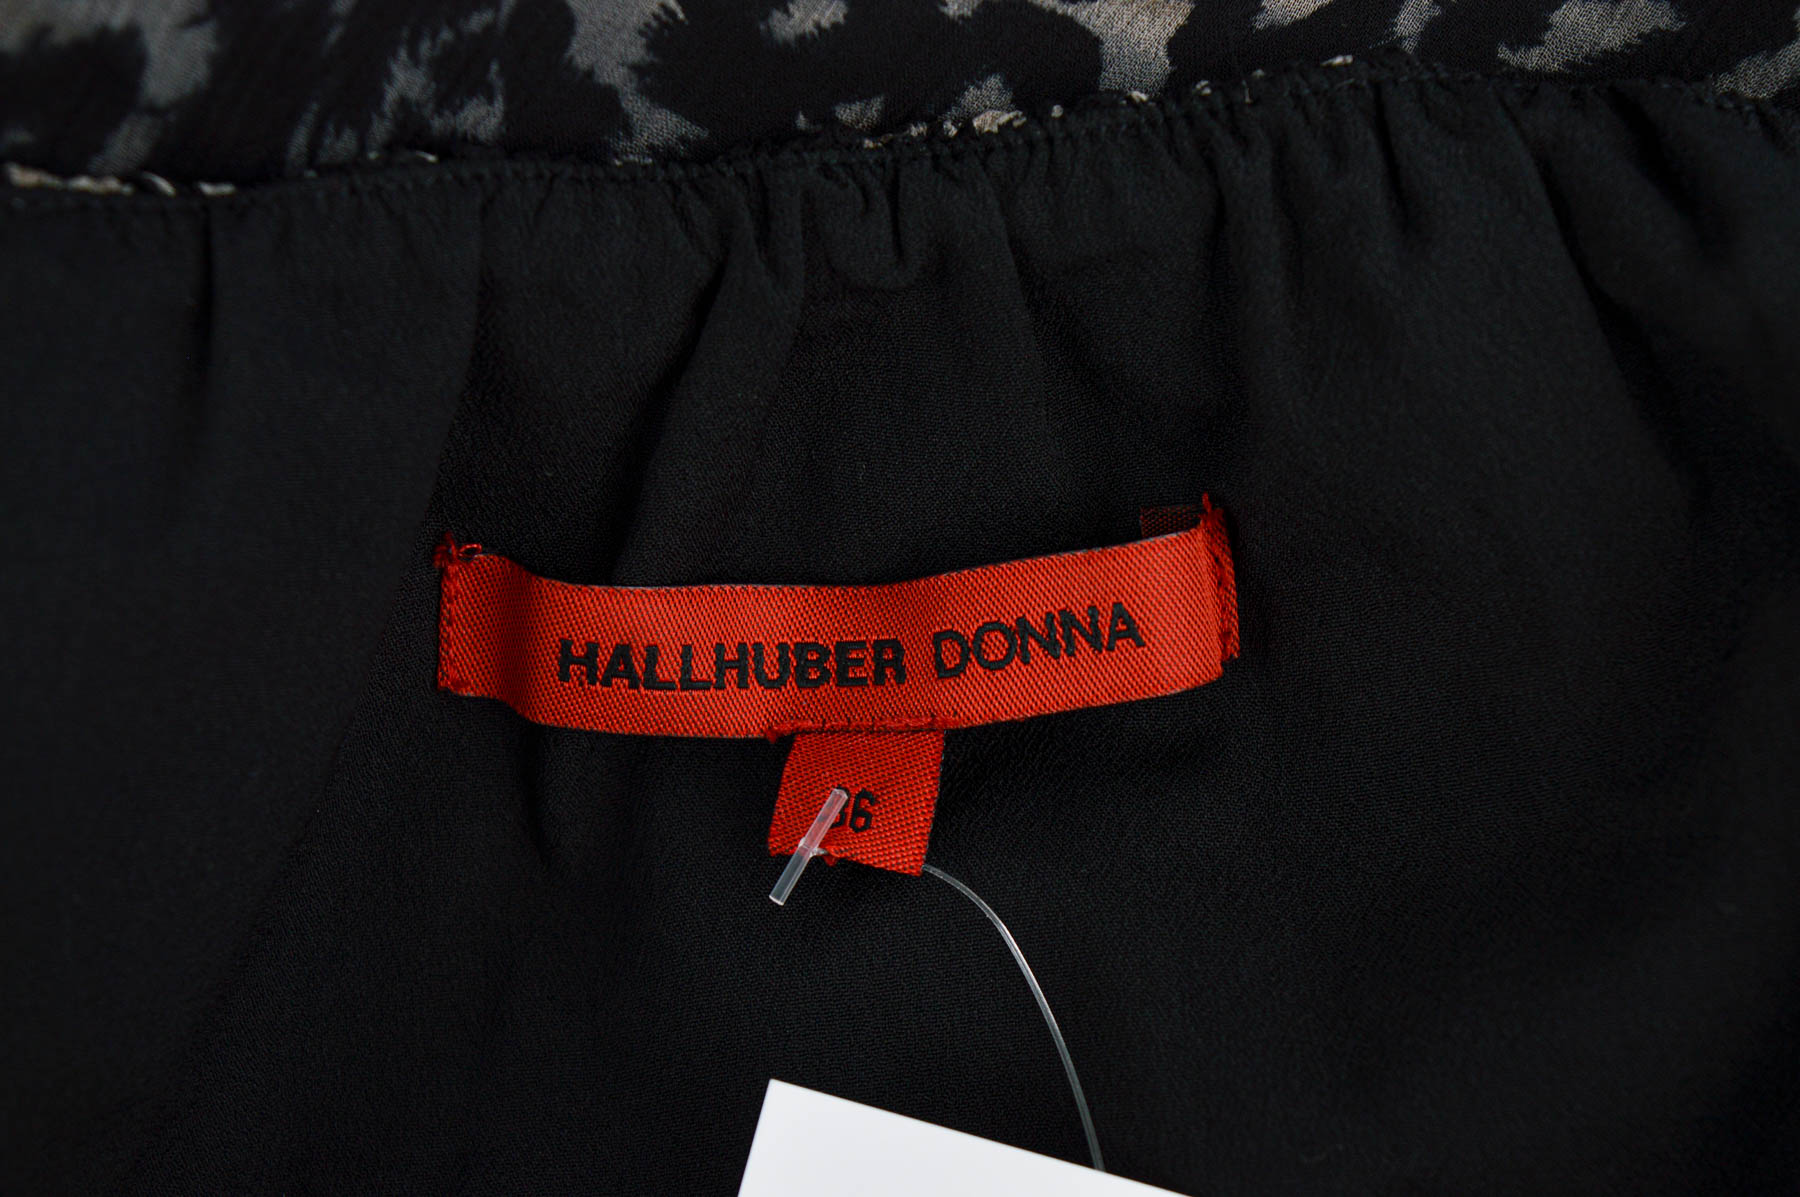 Women's shirt - HALLHUBER DONNA - 2